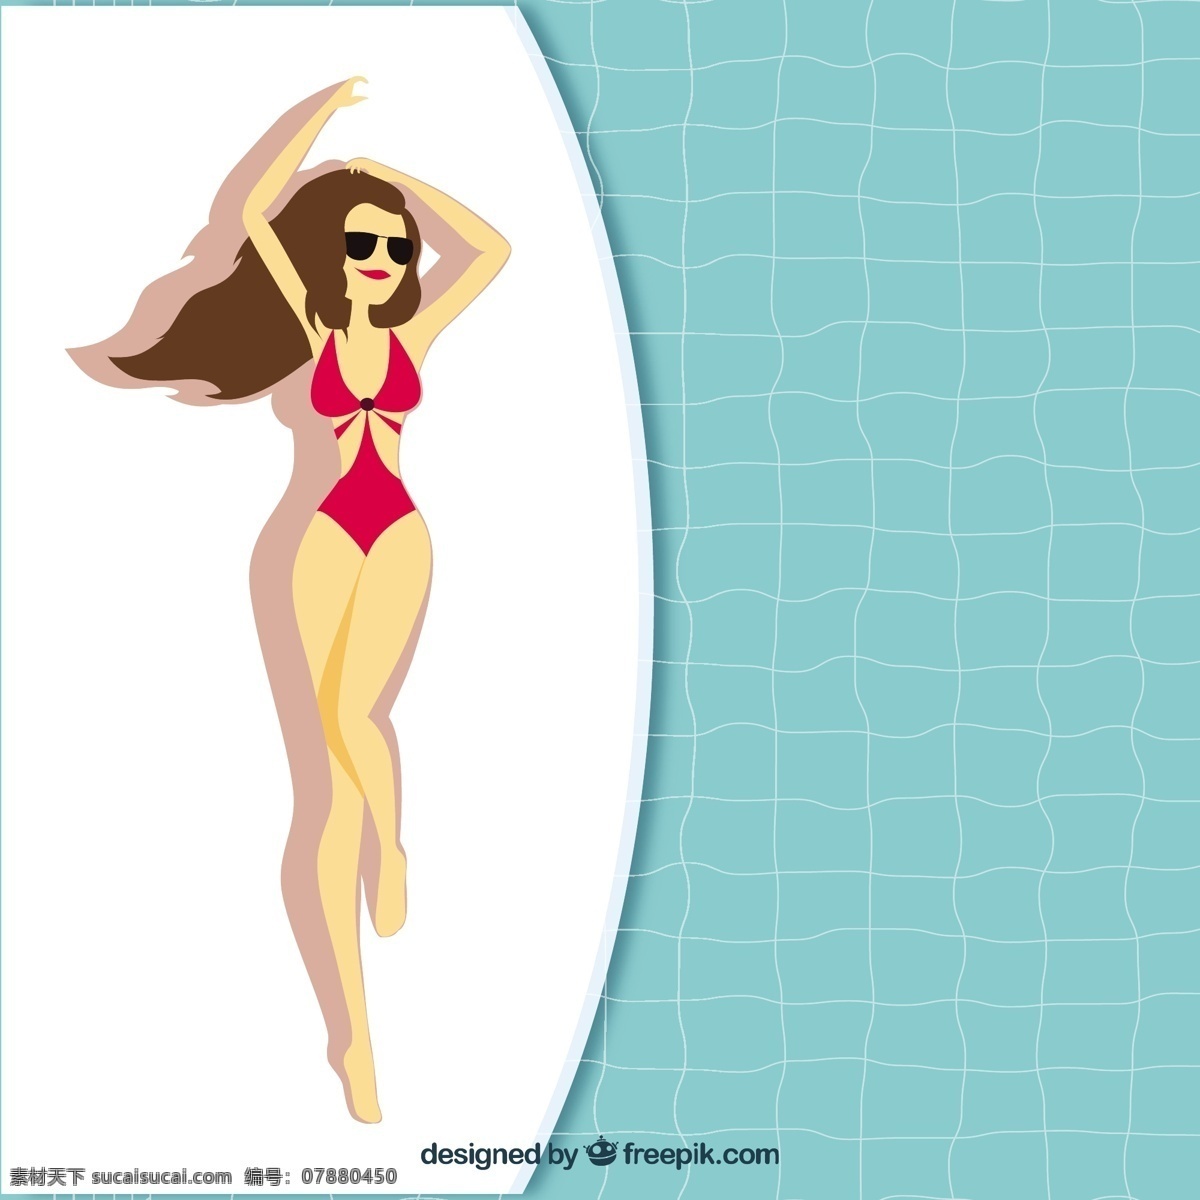 女子 带 泳衣 游泳池 背景 夏天的假期 度假 游泳 背景下 放松 冷静 季节 夏天 日光浴